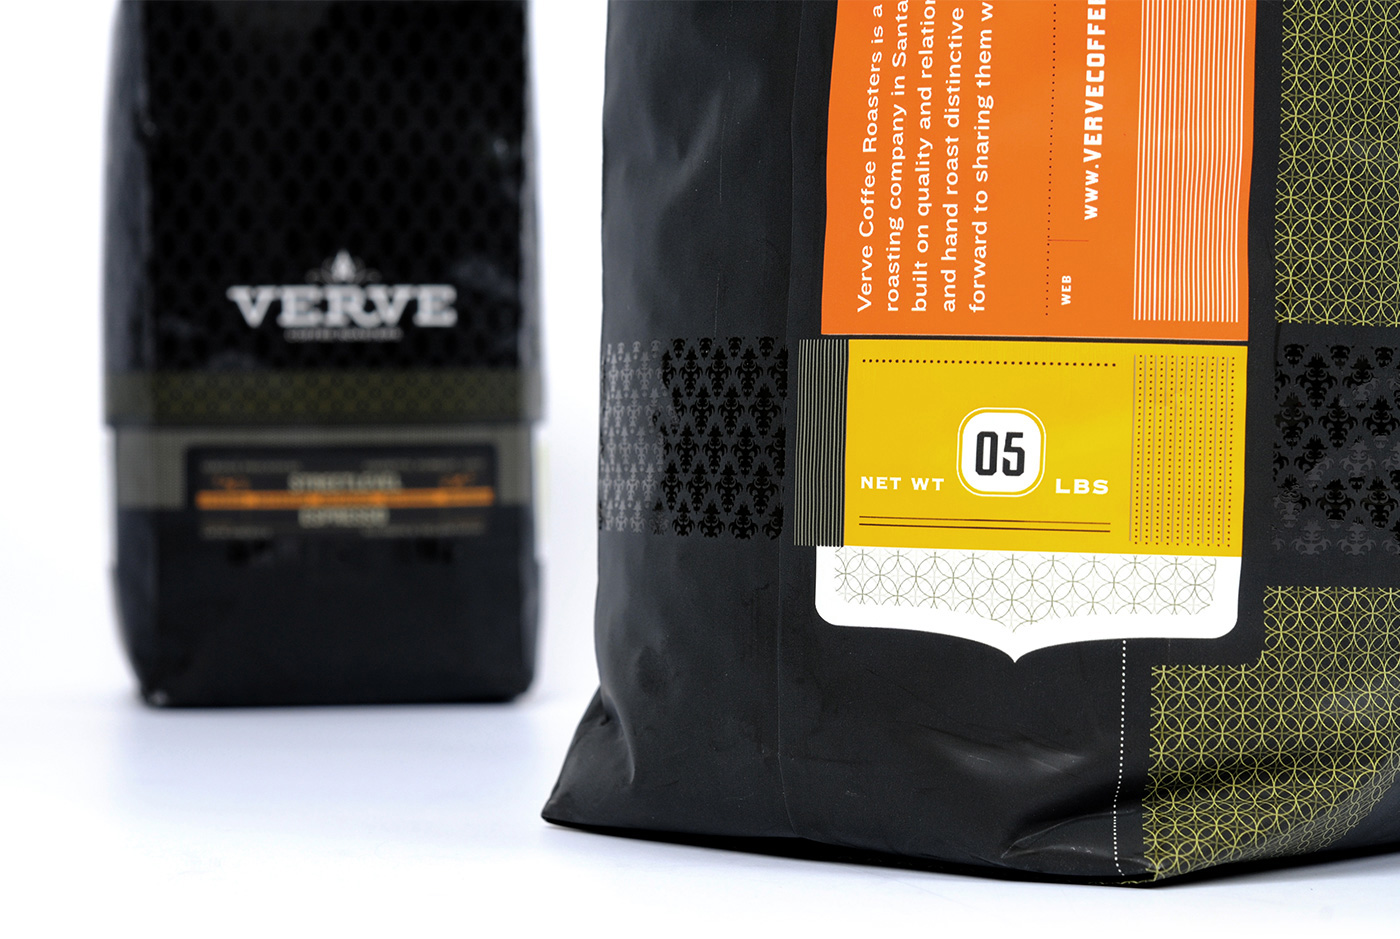 Verve Coffee packaging detail